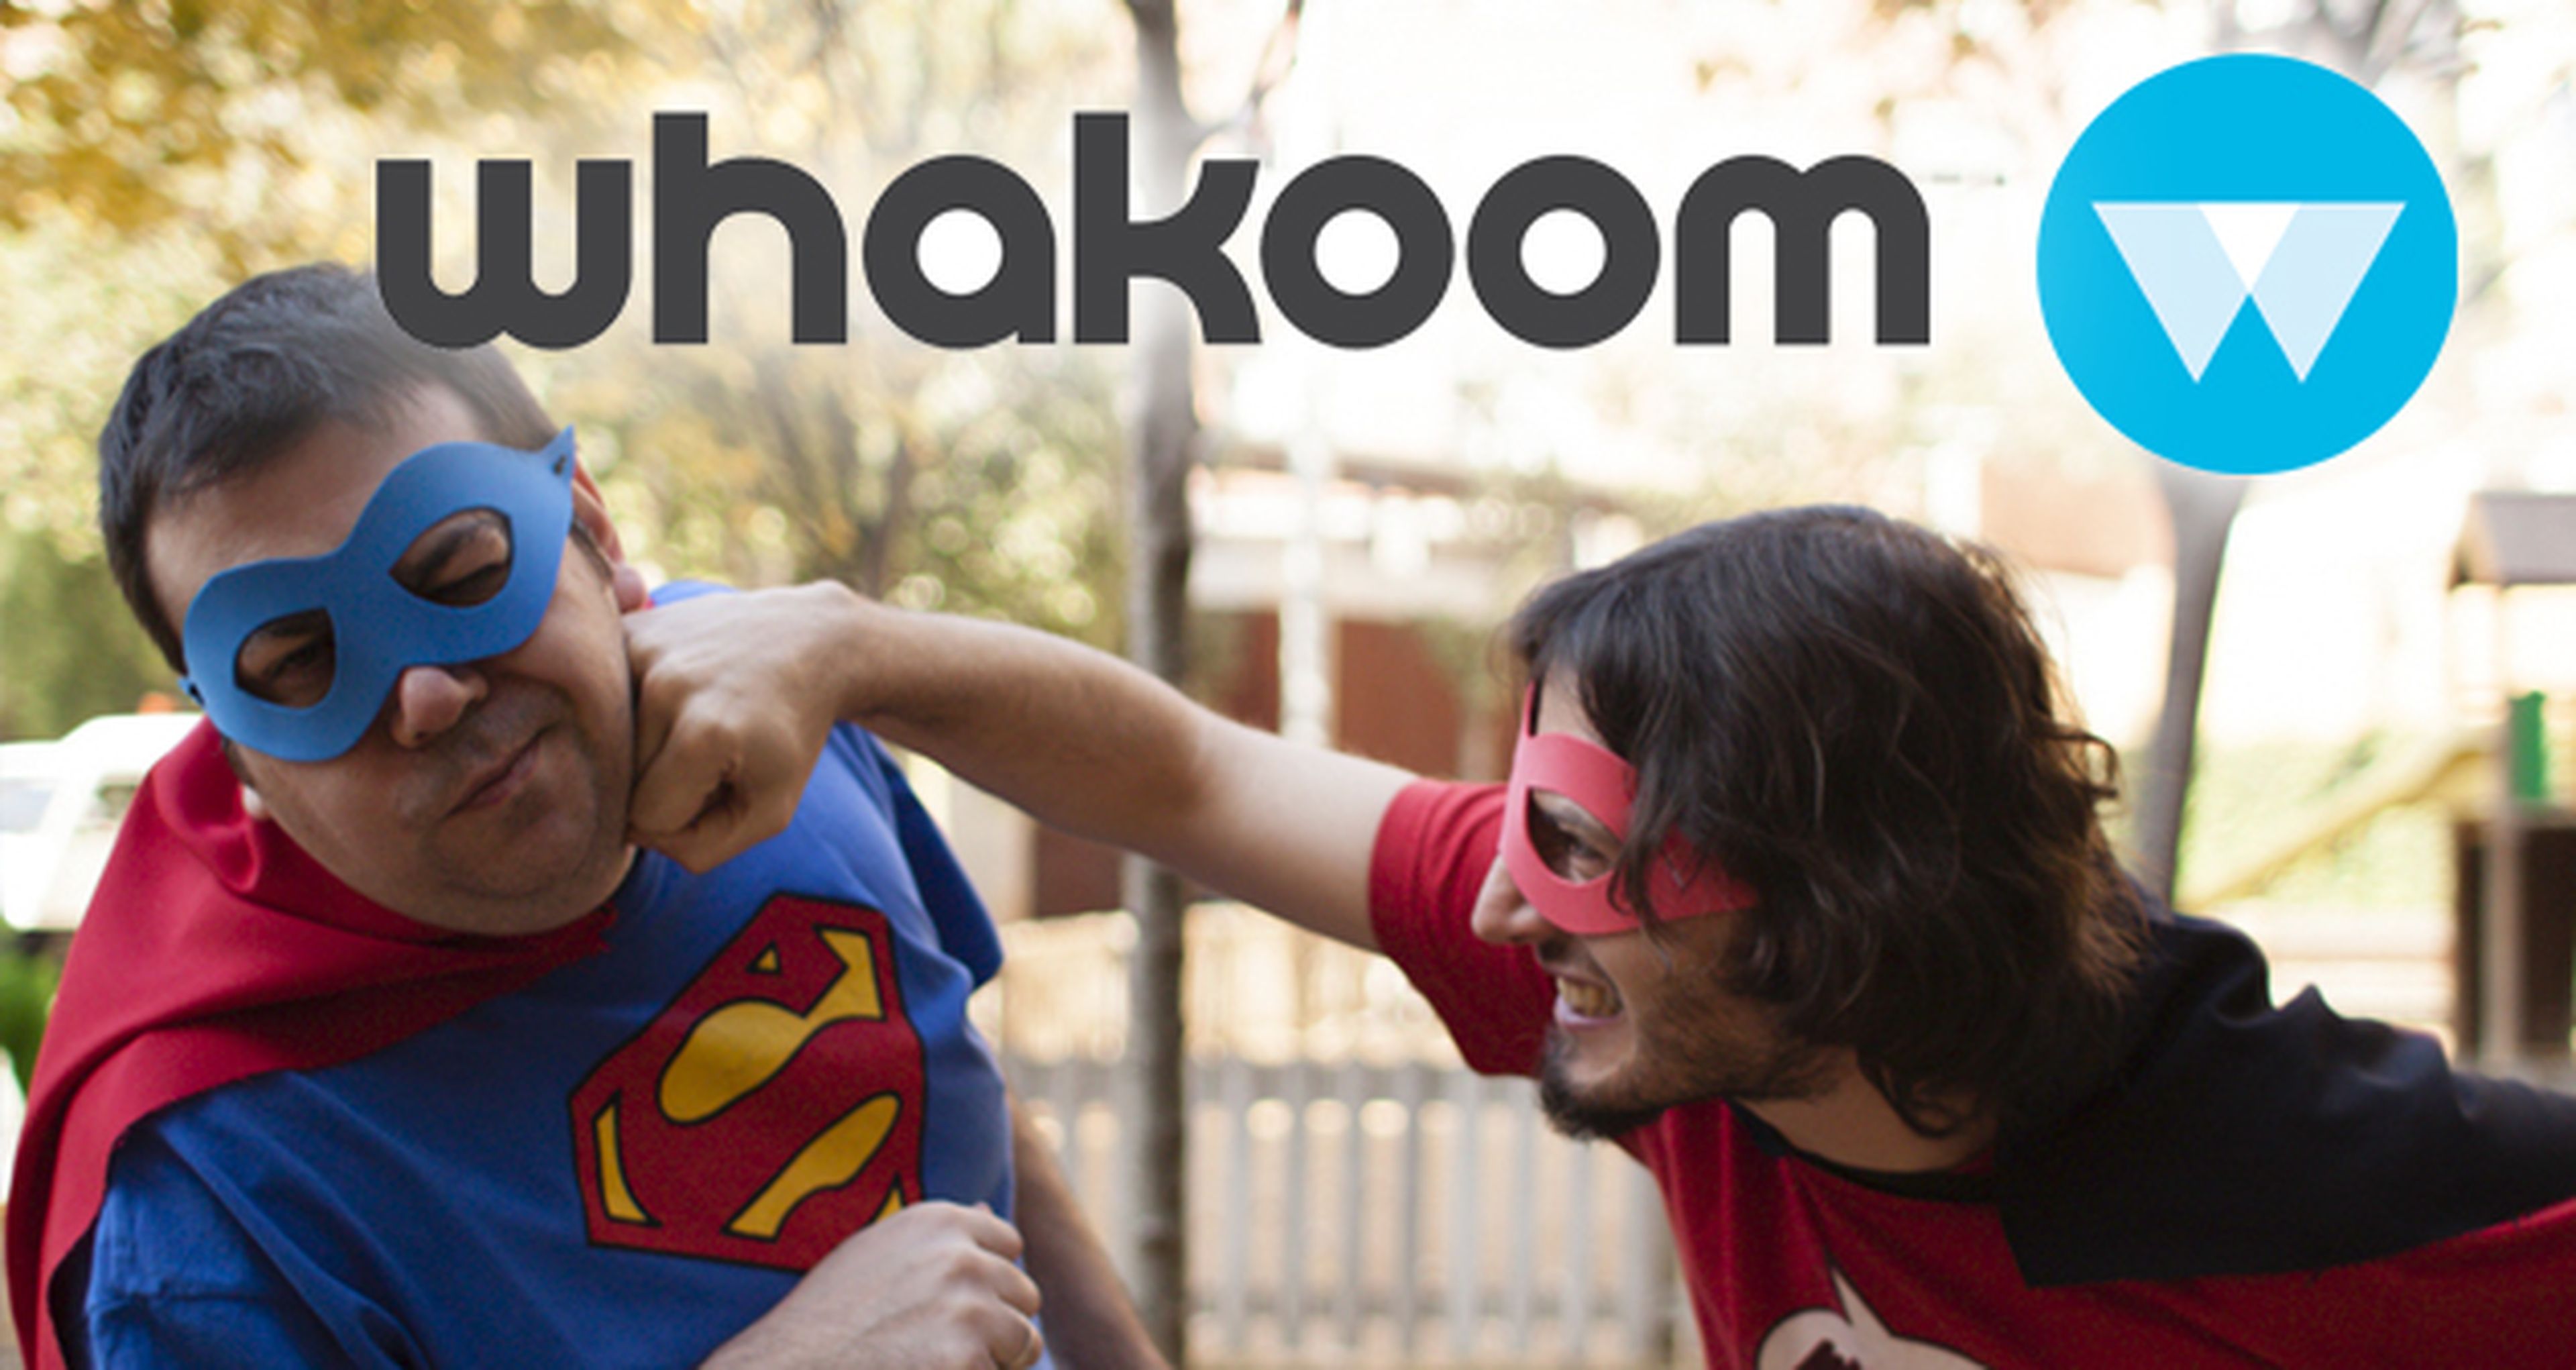 Whakoom, la red social de cómics. ¡Regalamos 10 cuentas unlimited!